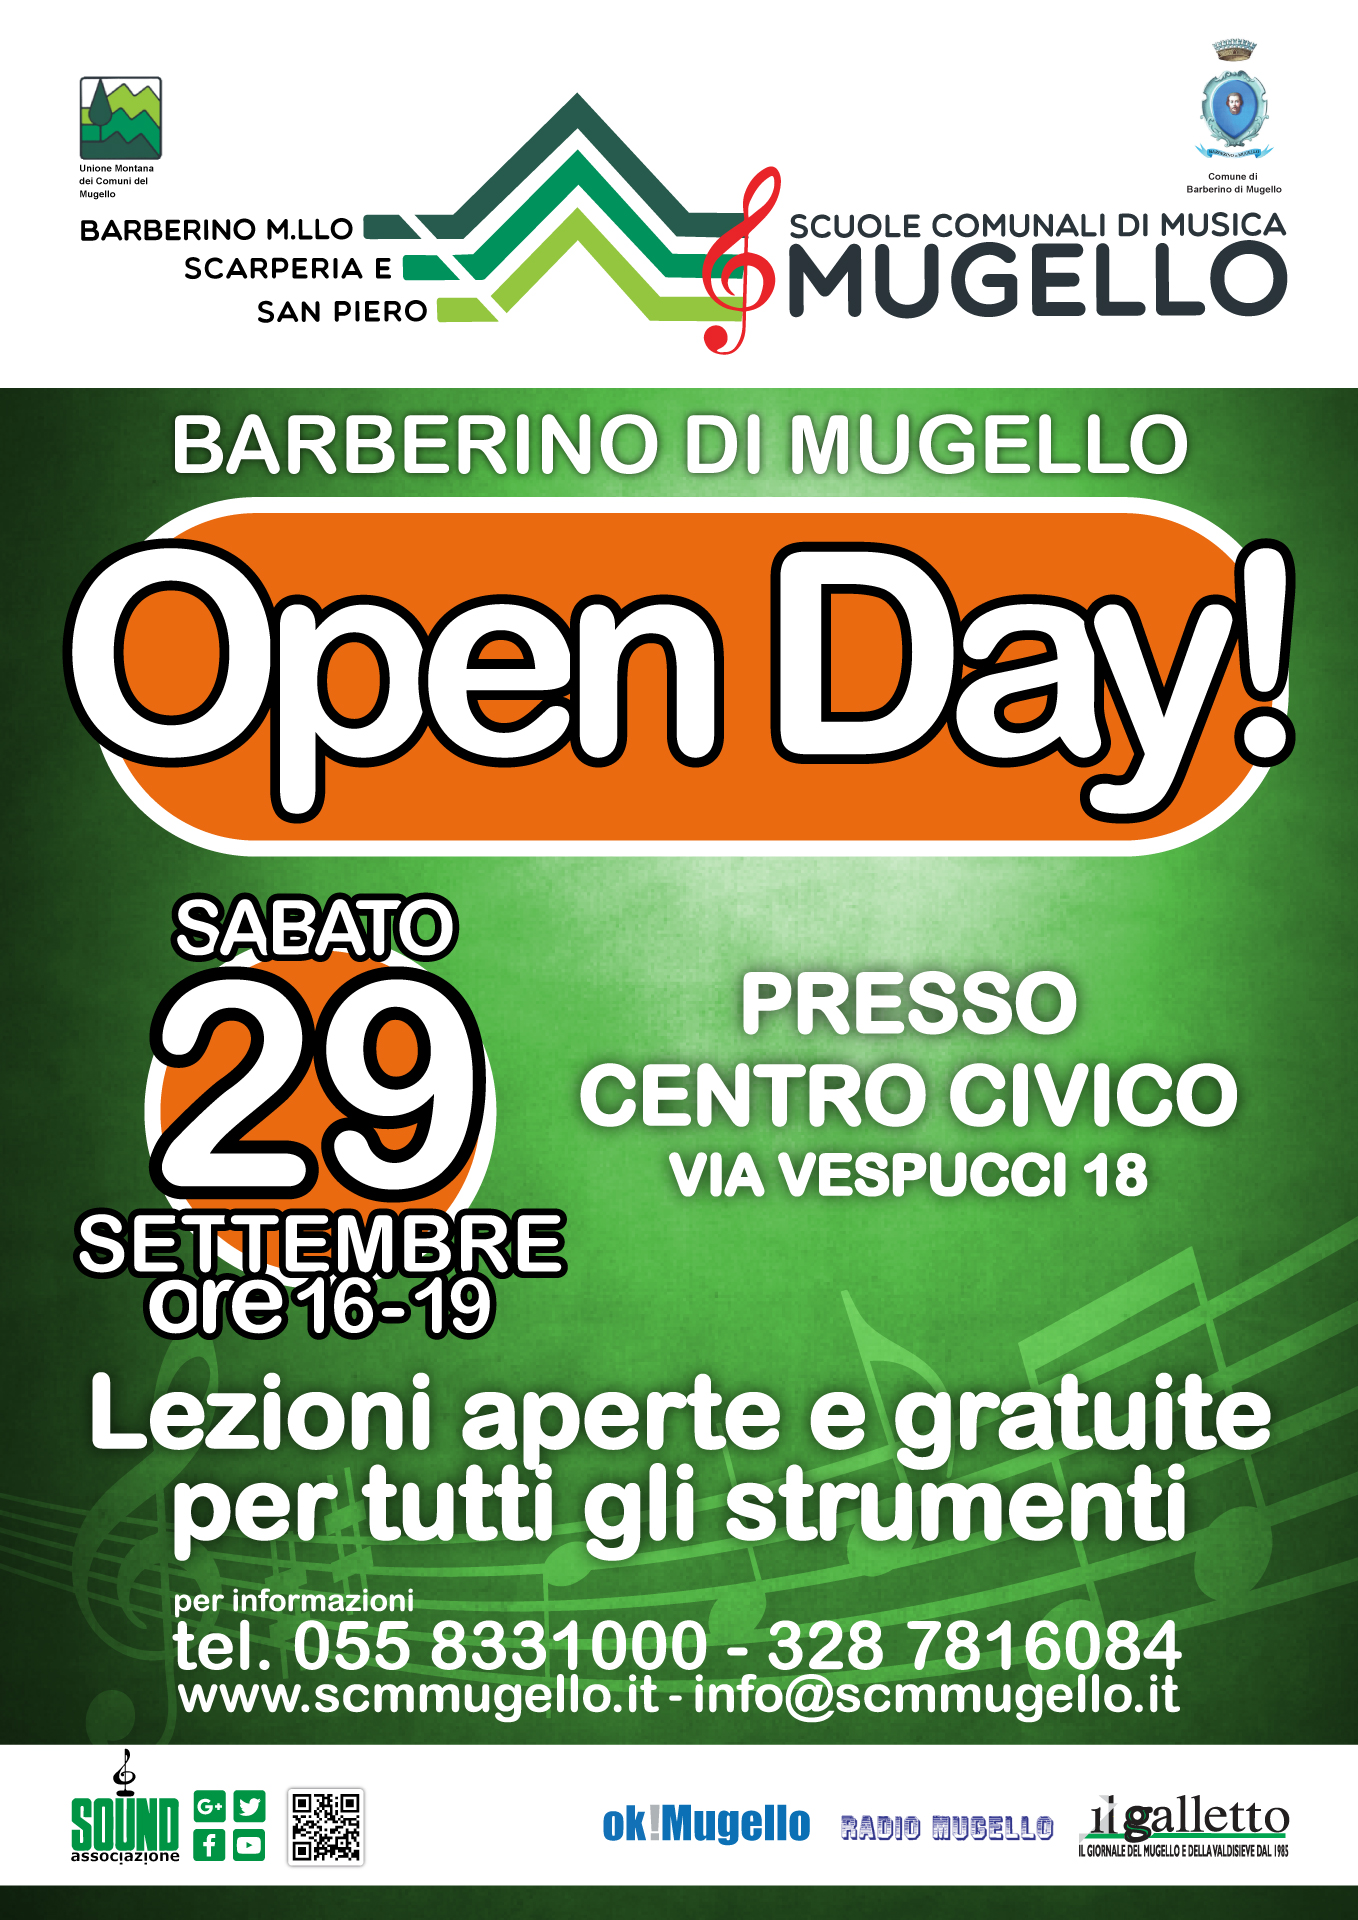 OPEN DAY SCUOLA DI MUSICA! 29 Settembre Barberino di Mugello